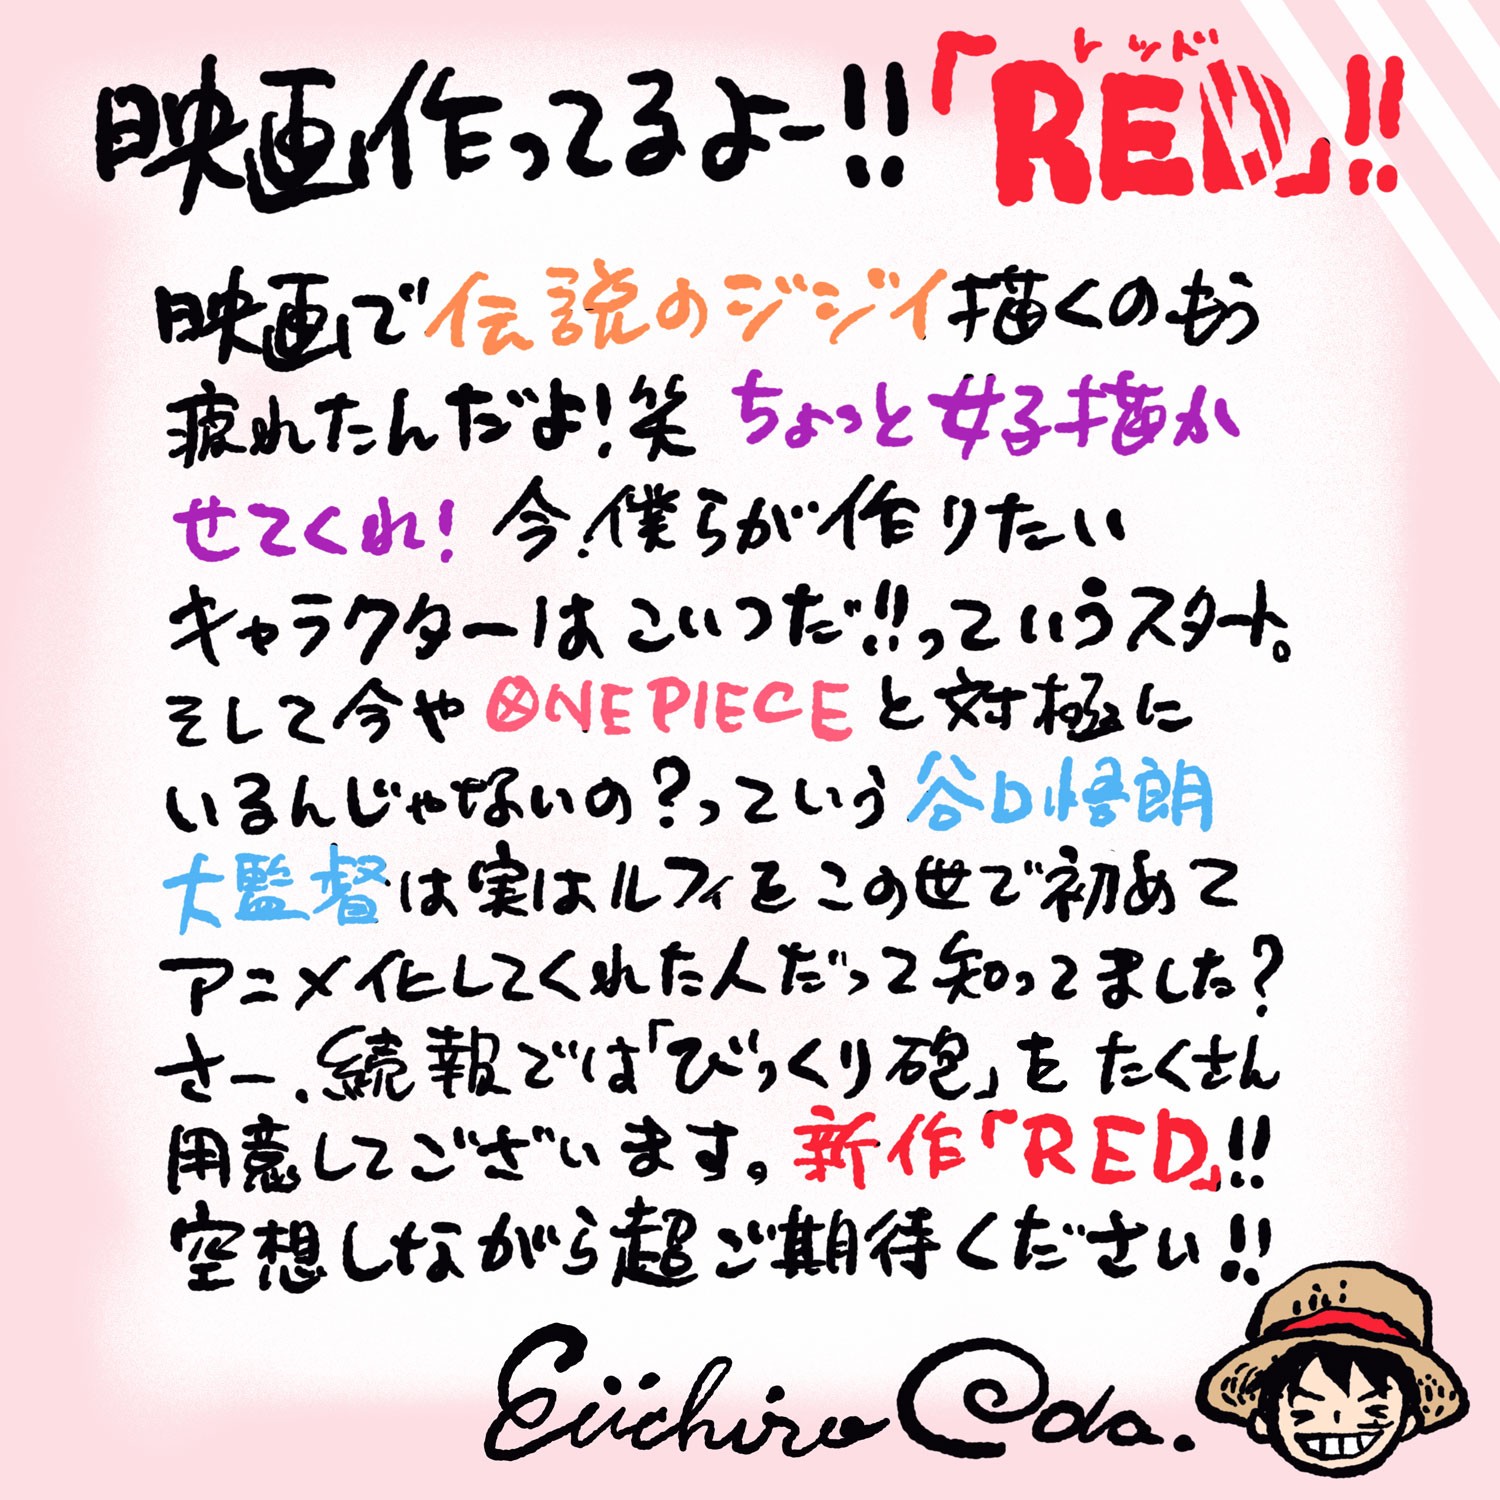 Un mensaje de Eiichiro Oda para los fans de One Piece Film Red